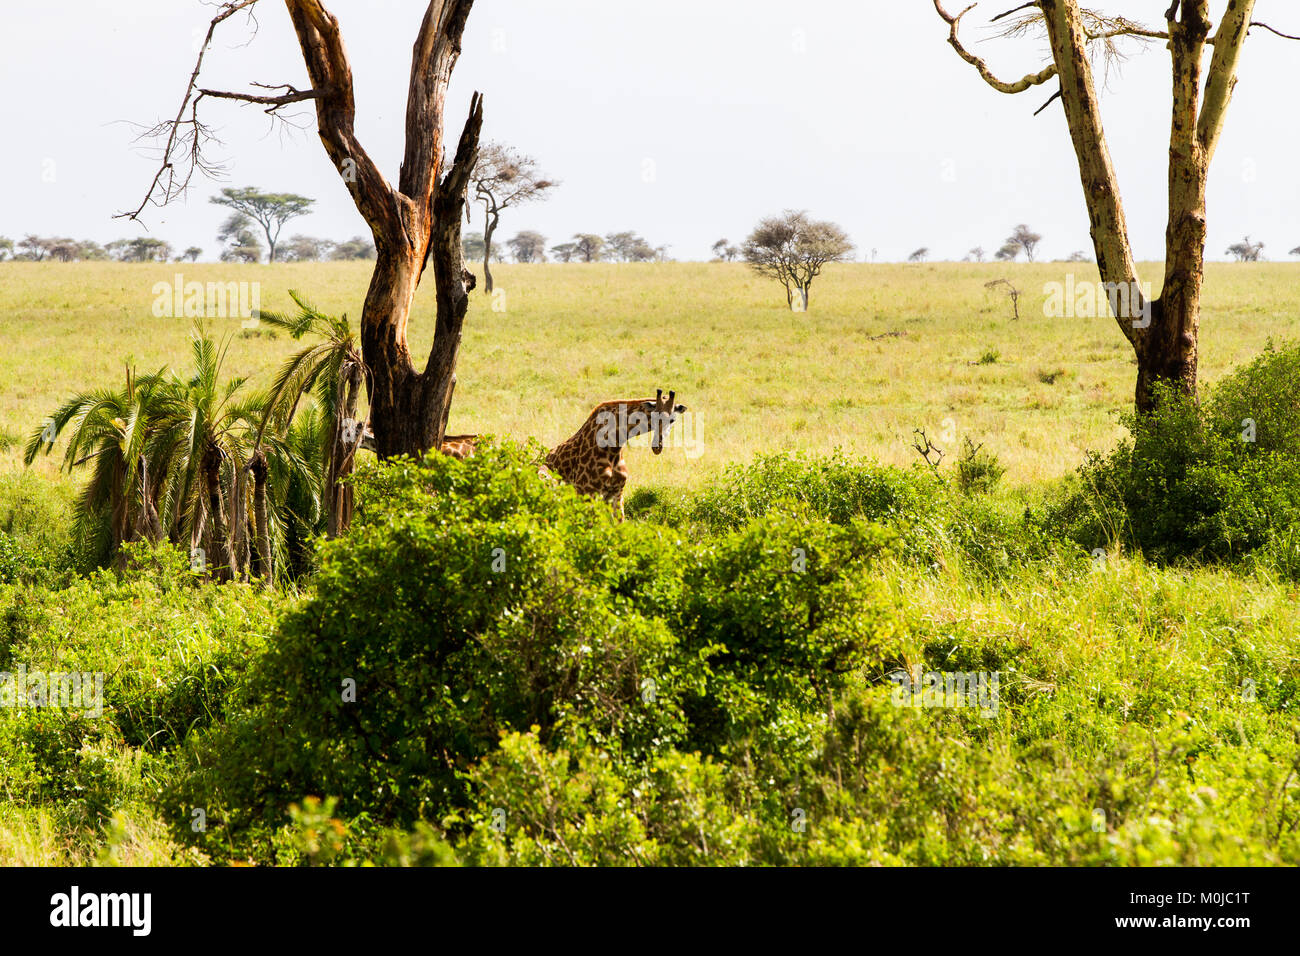 La giraffa (giraffa), il genere di African anche-toed mammiferi ungulati, il più alto vivono animali terrestri e il più grande dei ruminanti, parte la grande FIV Foto Stock